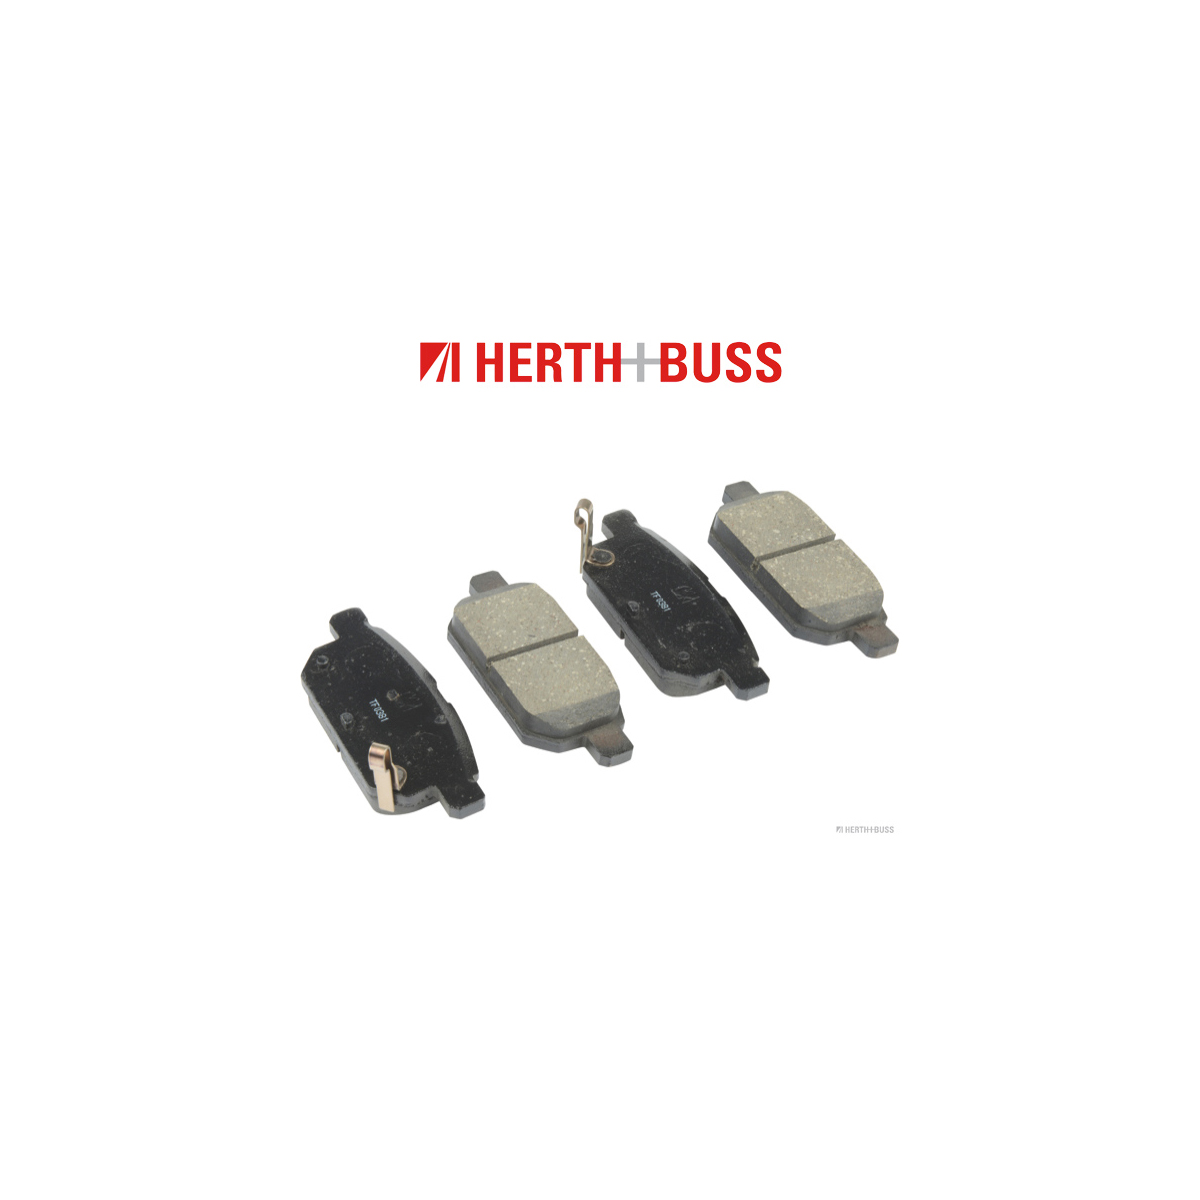 HERTH+BUSS JAKOPARTS Bremsscheiben + Beläge SUZUKI Swift 4 1.2 4x4 90/94 PS hinten